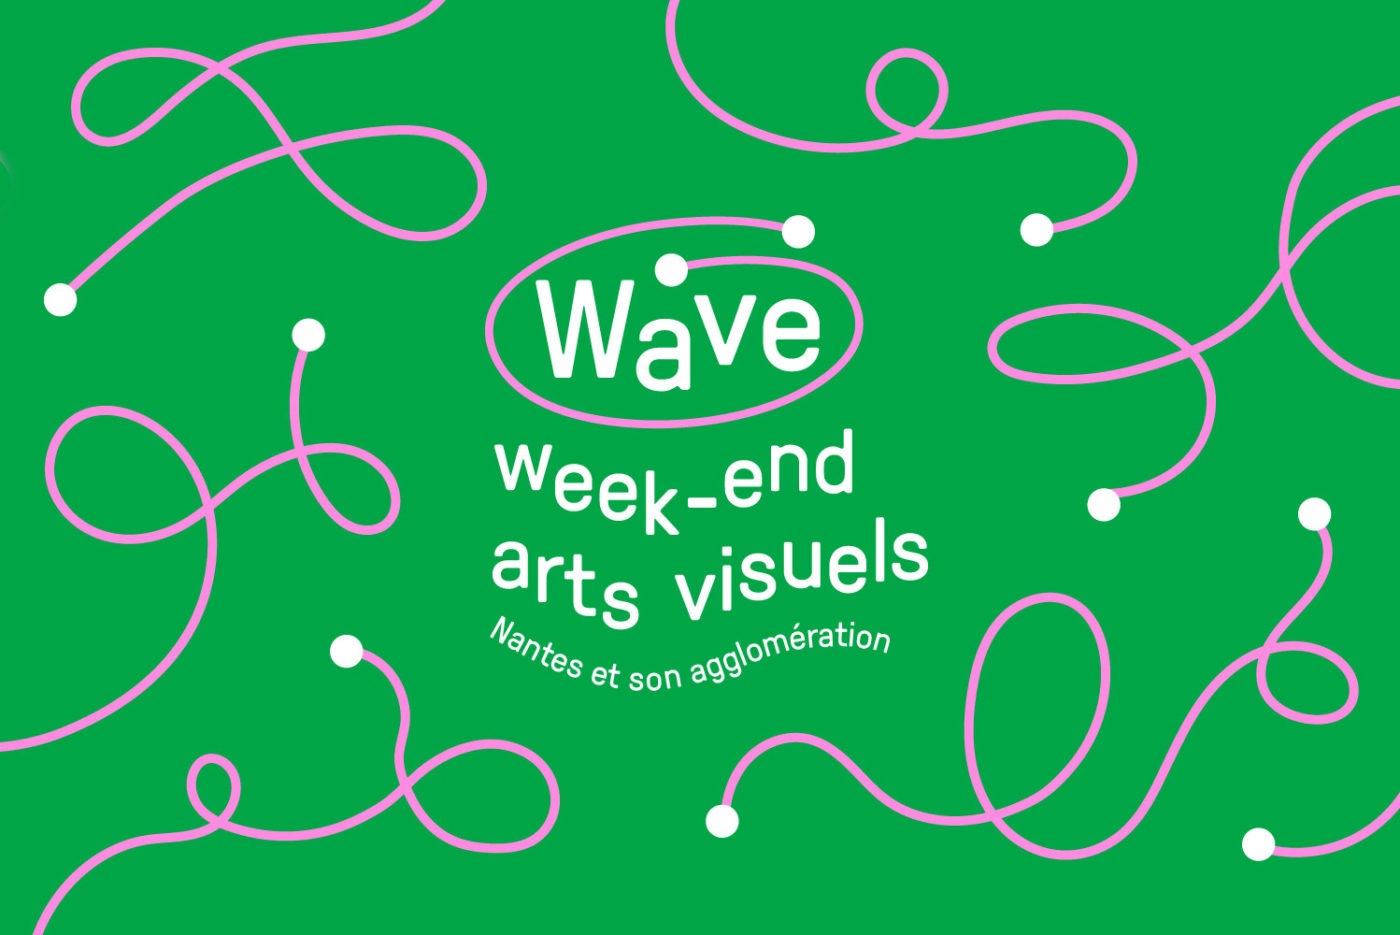 Wave Week